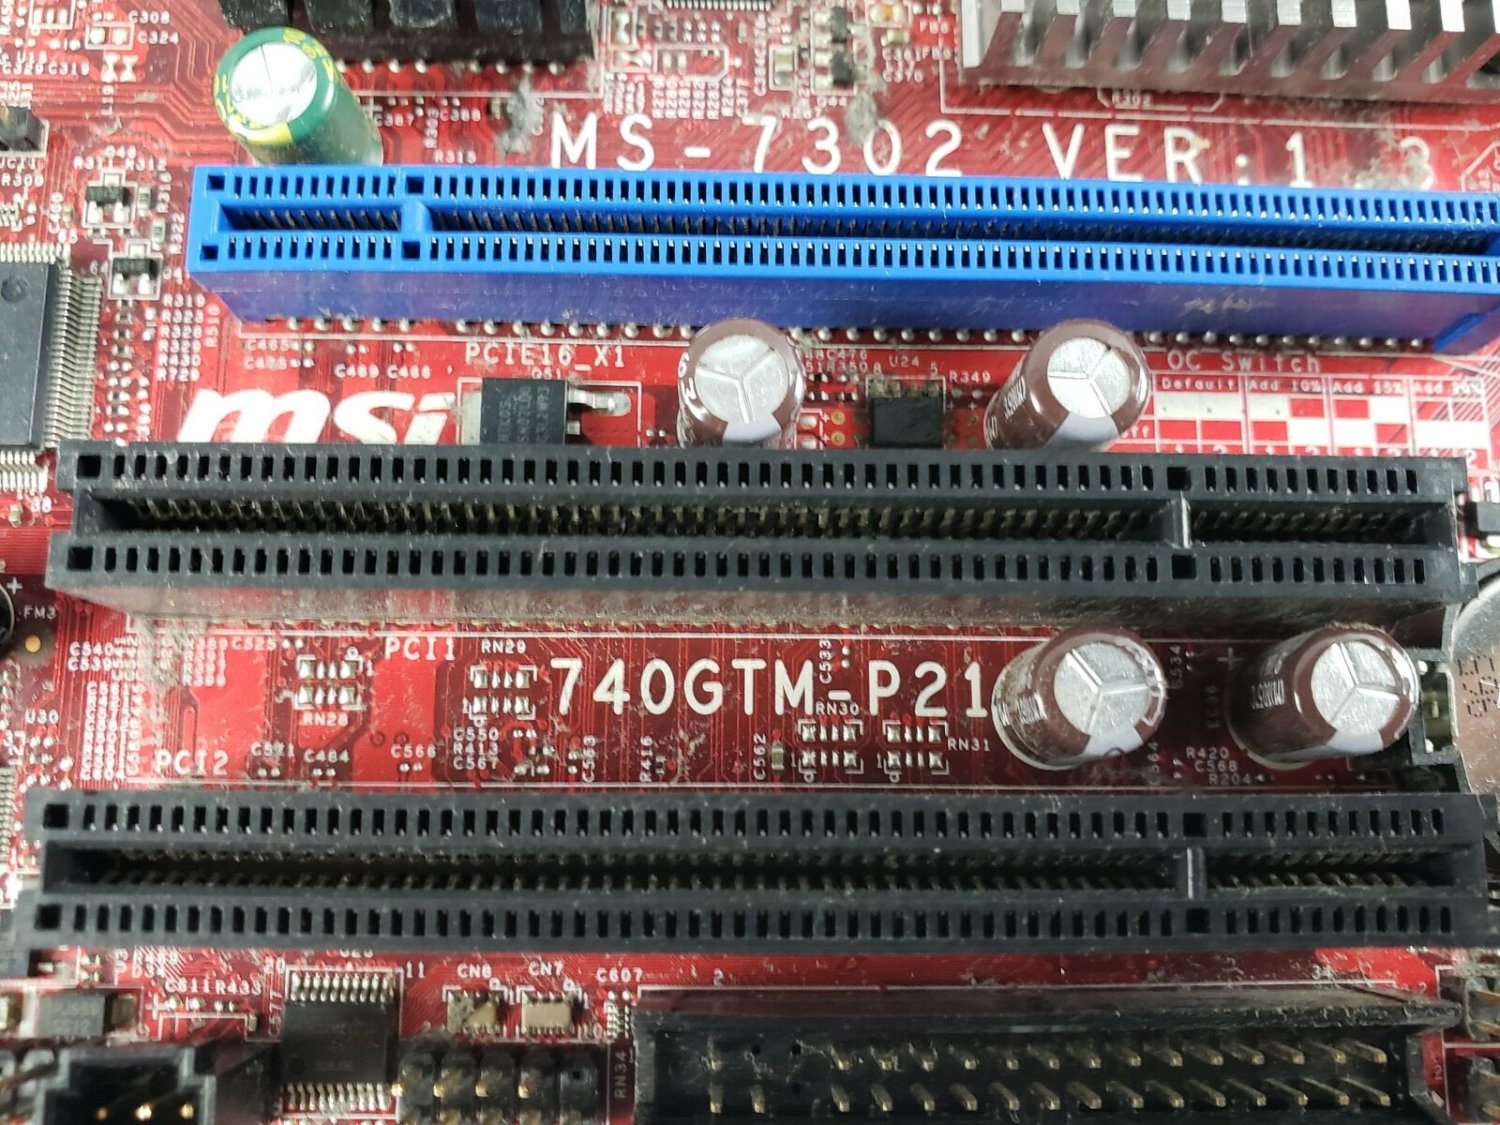 MSI MS-7302 VER: 1.3 Motherboard